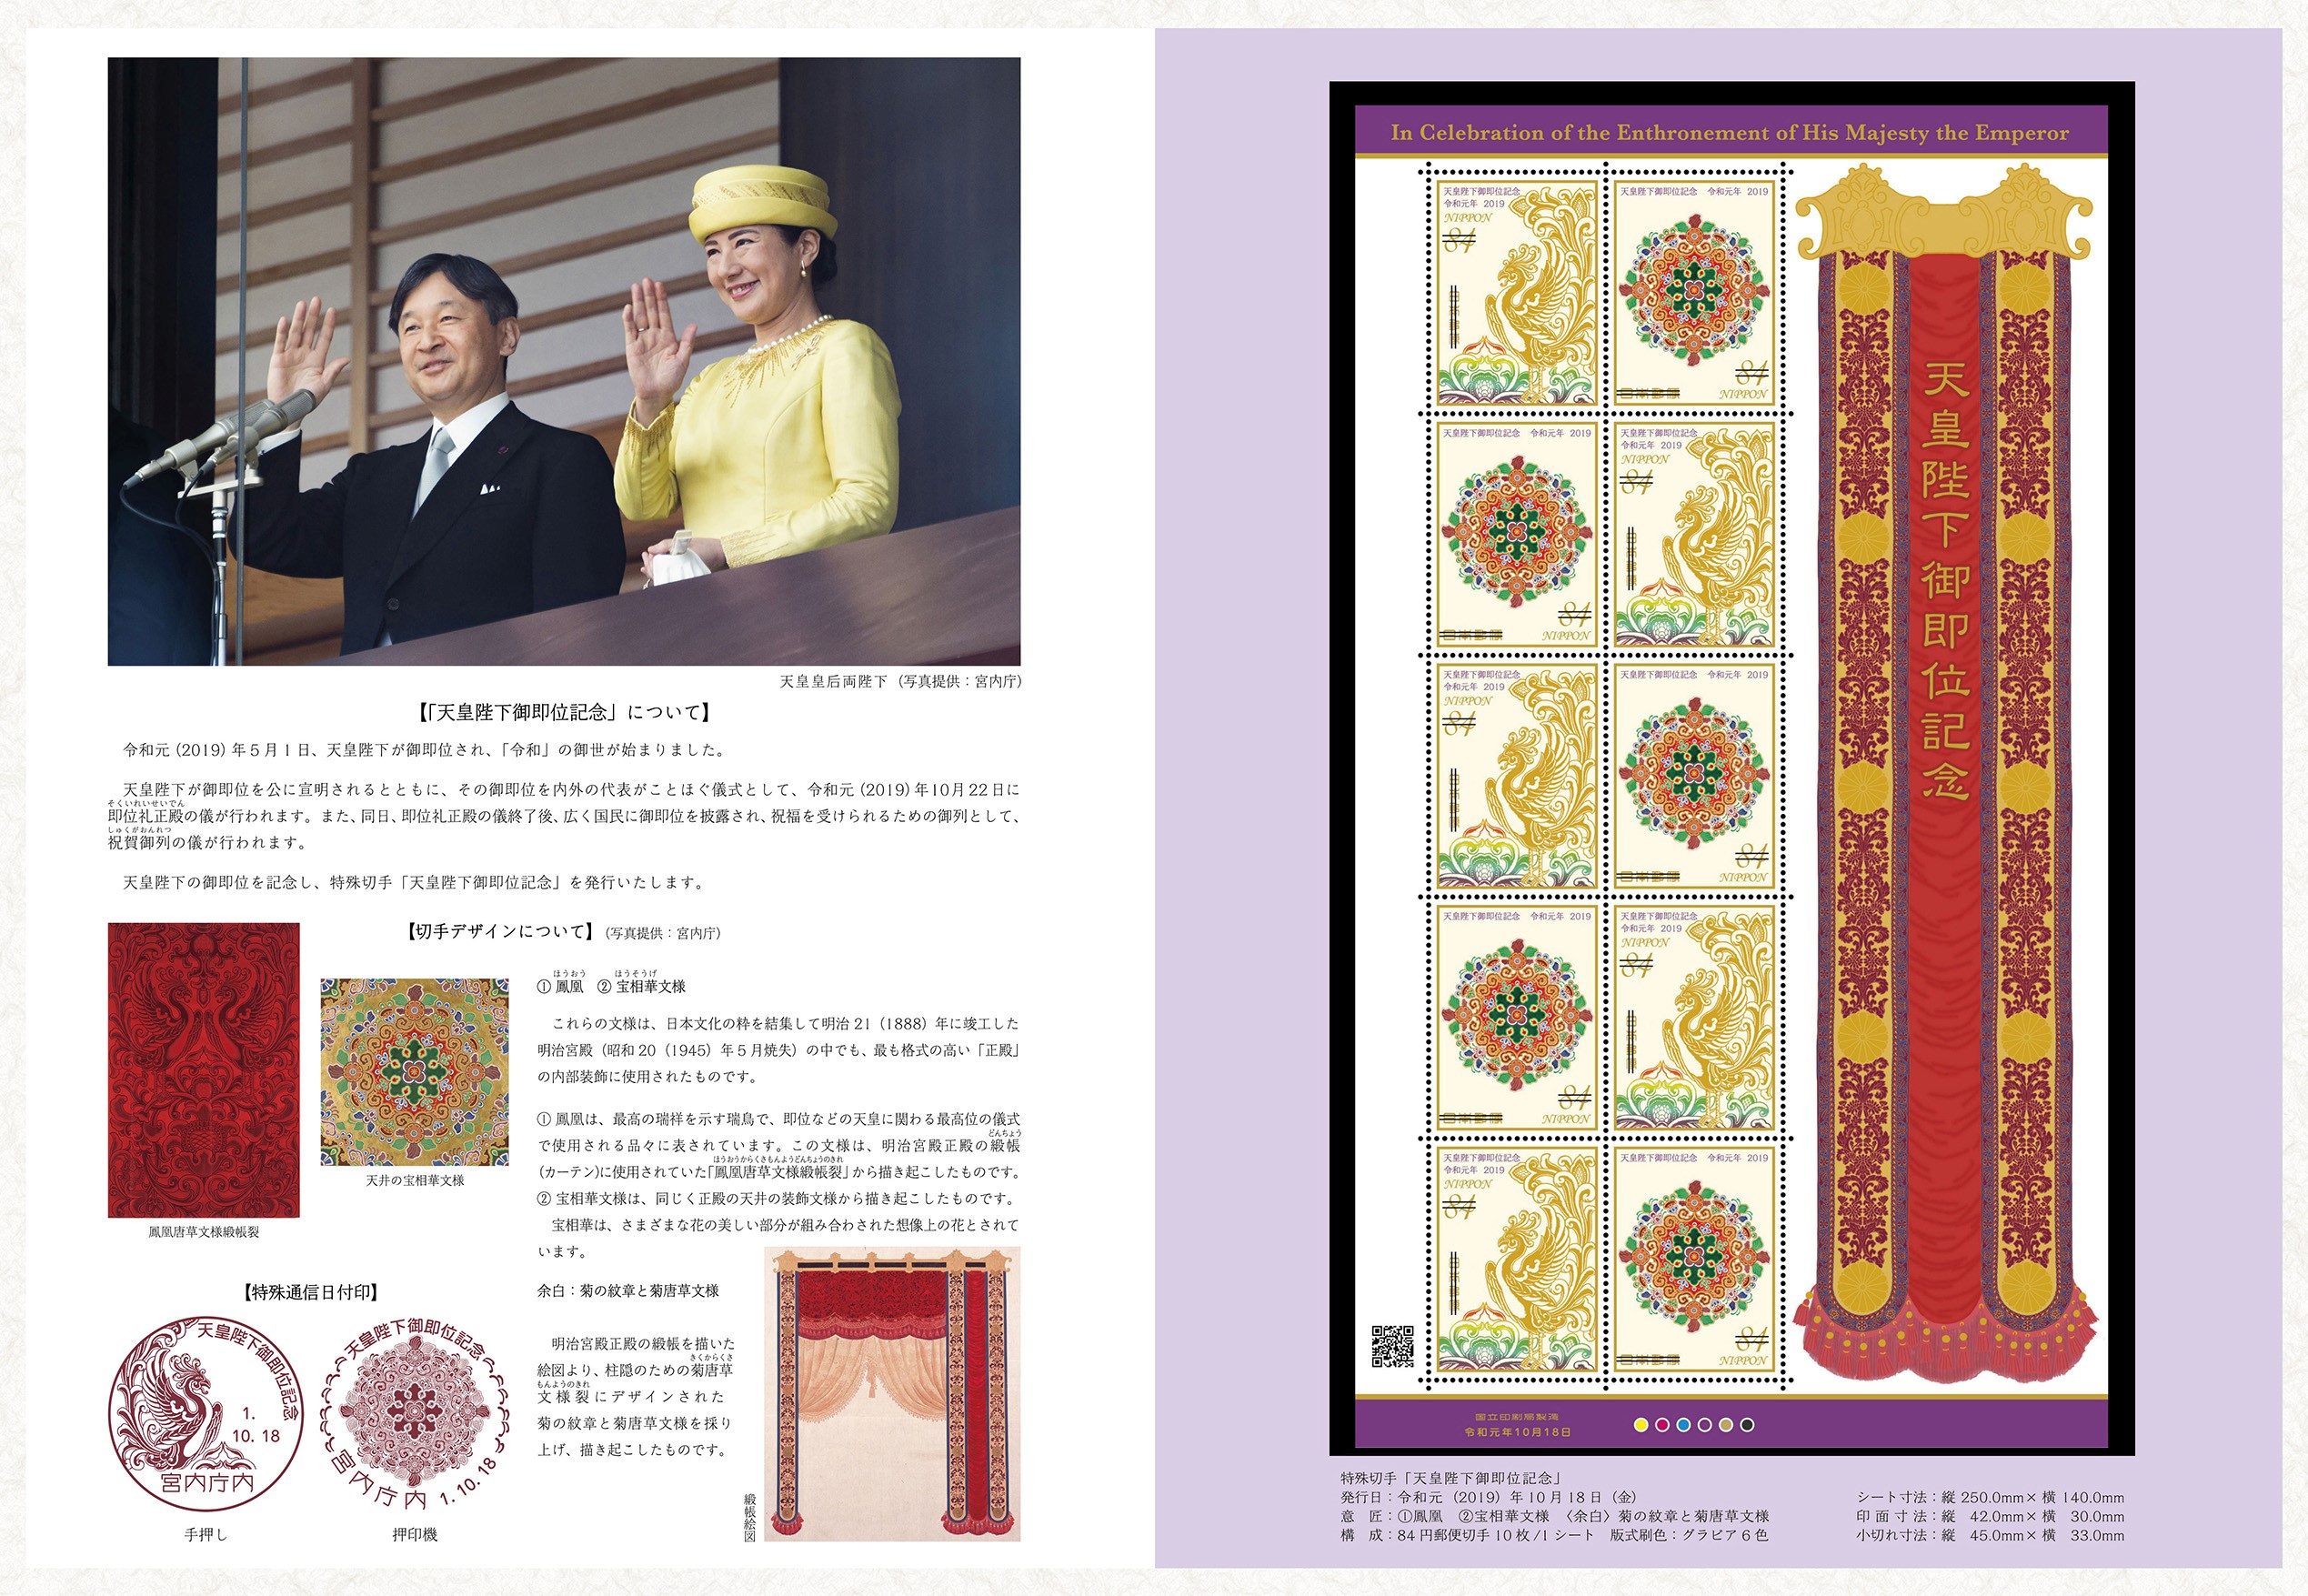 天皇陛下御即位記念 | 日本郵便株式会社